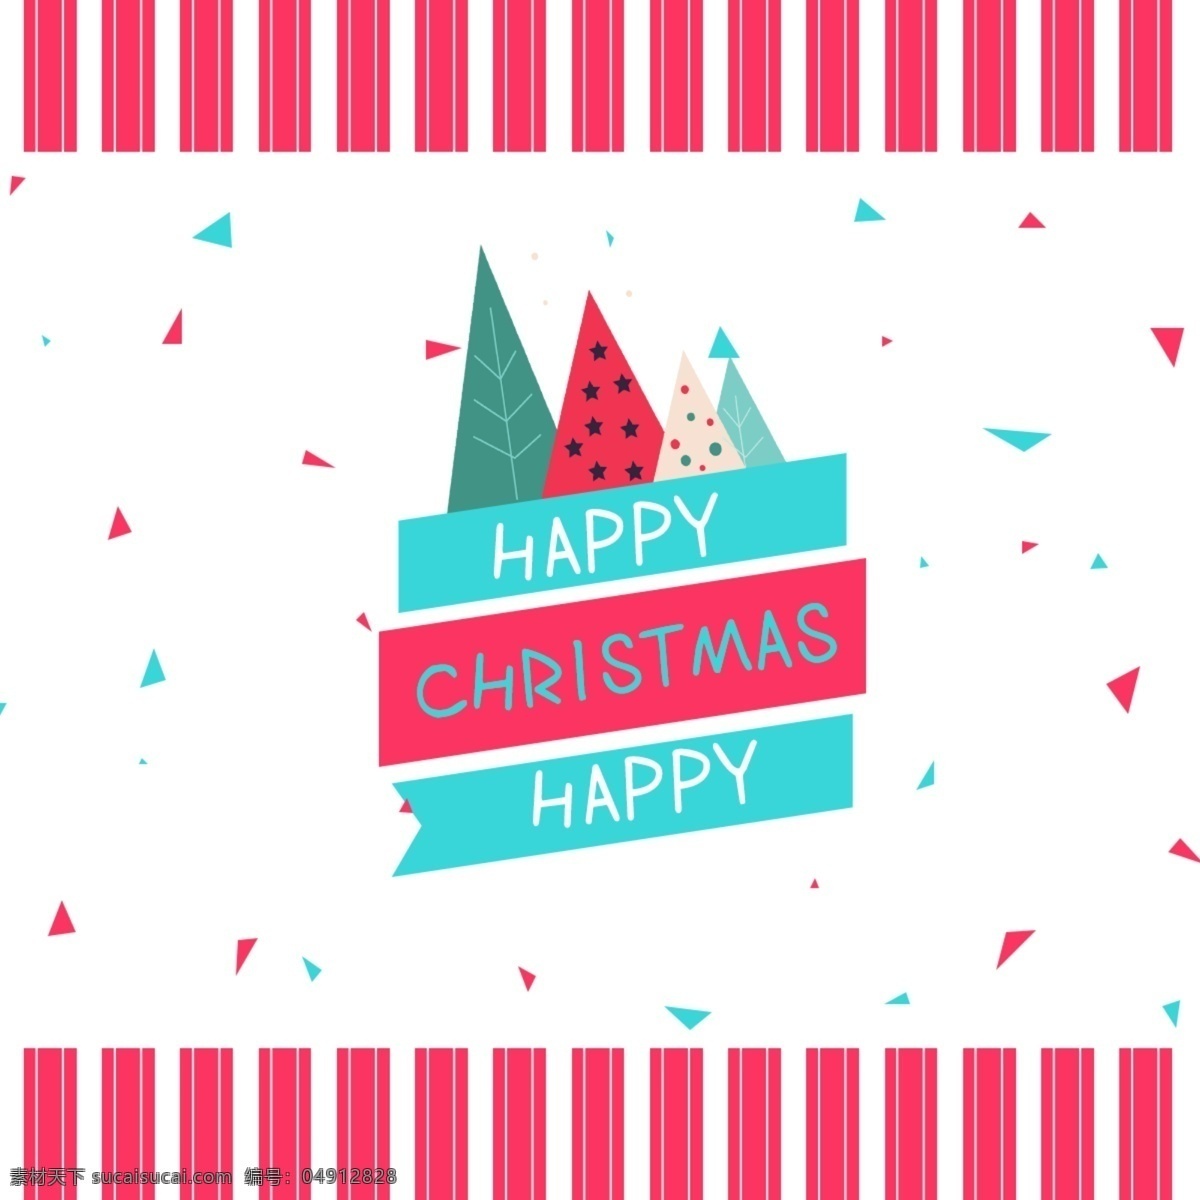 粉色 条纹 圣诞树 简单 背景 三角形 浮 时尚 简约 白色 圣诞节